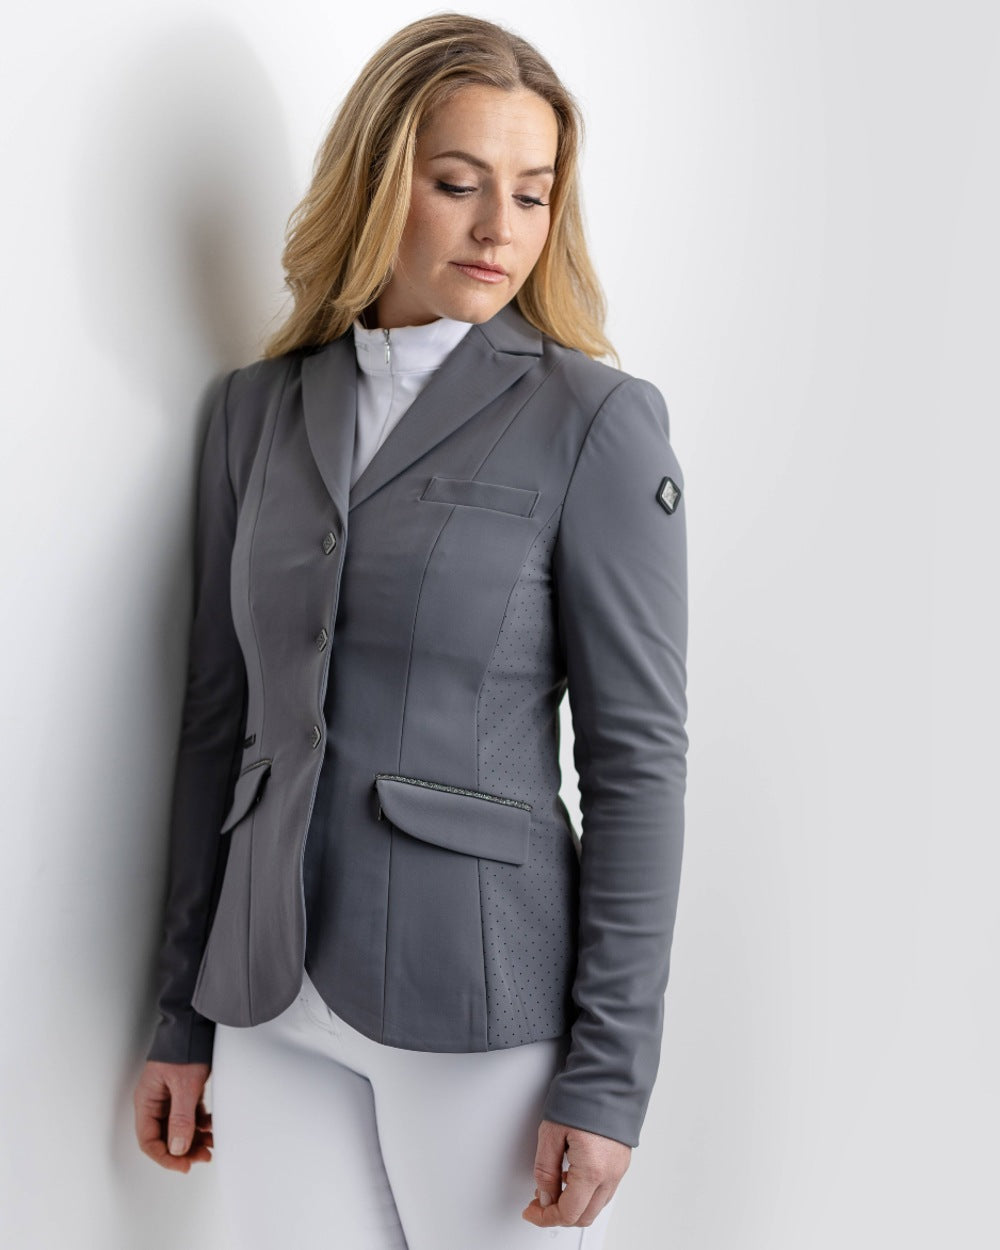 Graphite coloured LeMieux Dynamique Show Jacket on grey background 